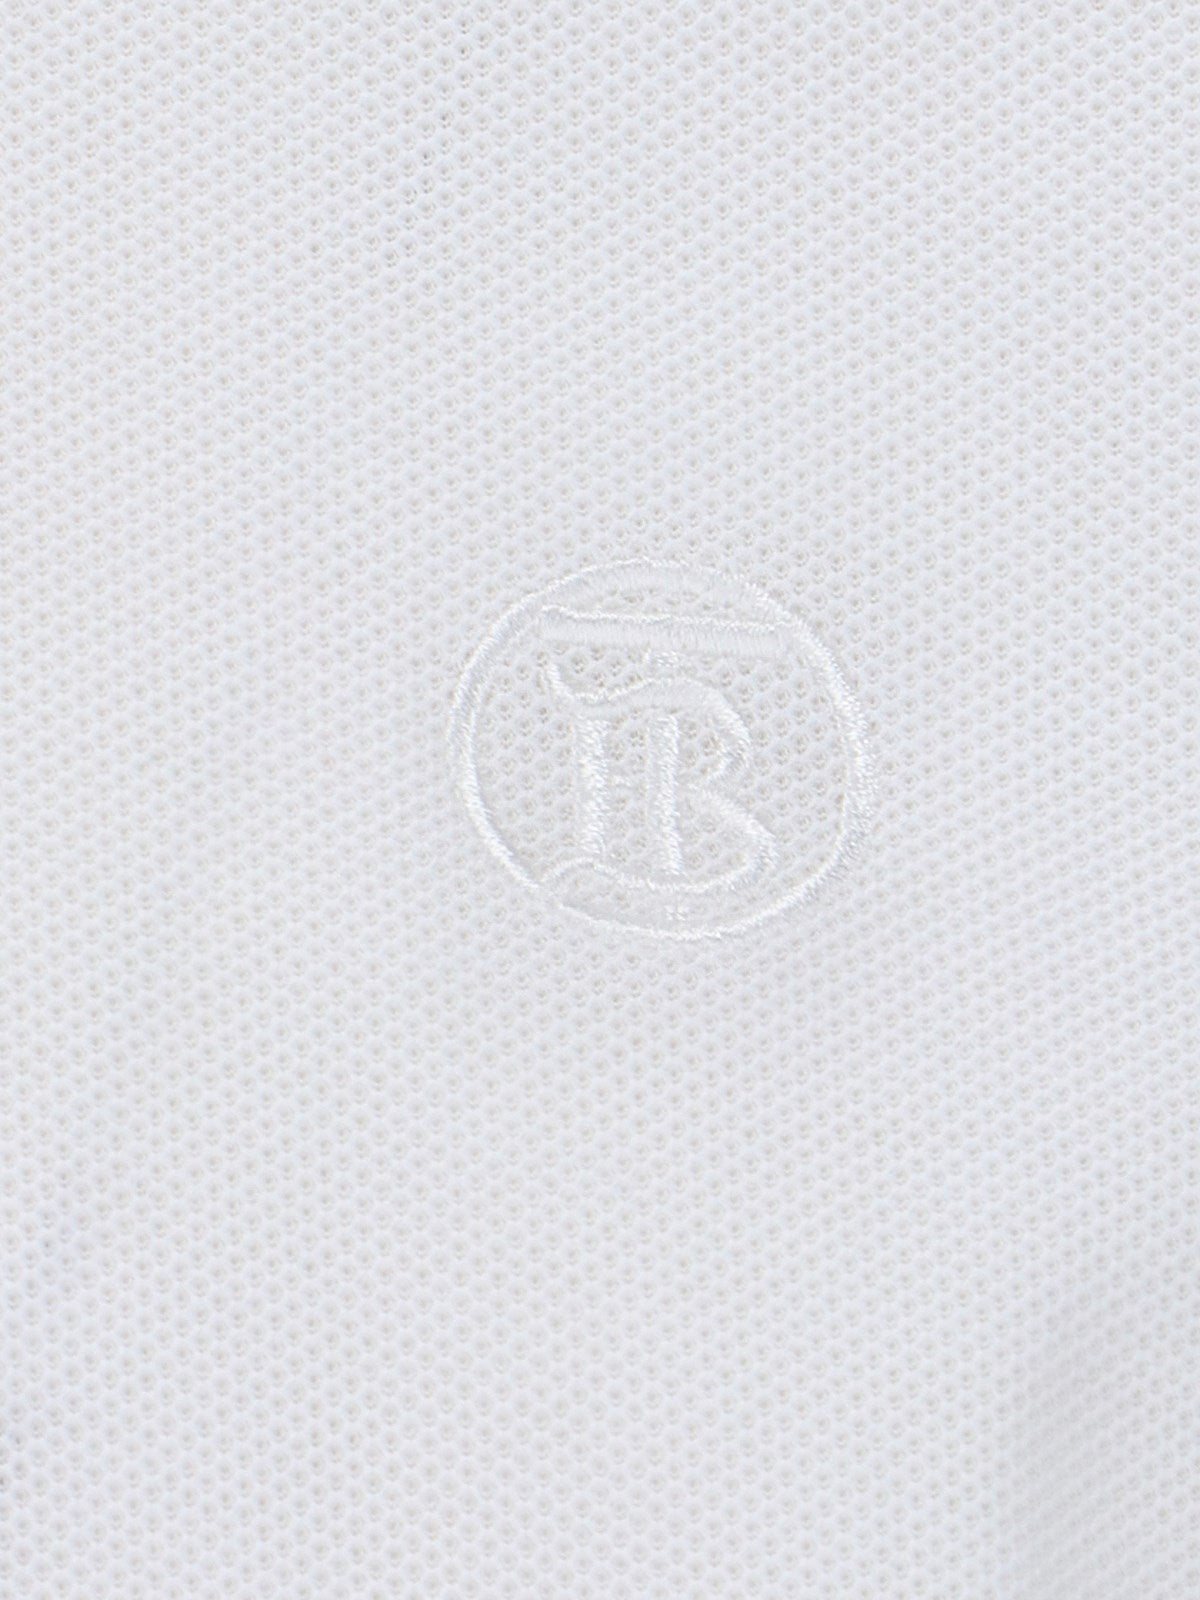 Burberry Polo logo-t-shirt-Burberry-Polo logo Burberry, in cotone bianco, colletto classico dettaglio righe rosse e nere, bottoni fronte, ricamo logo petto tono su tono, maniche corte, spacchetti laterali, orlo dritto.-Dresso